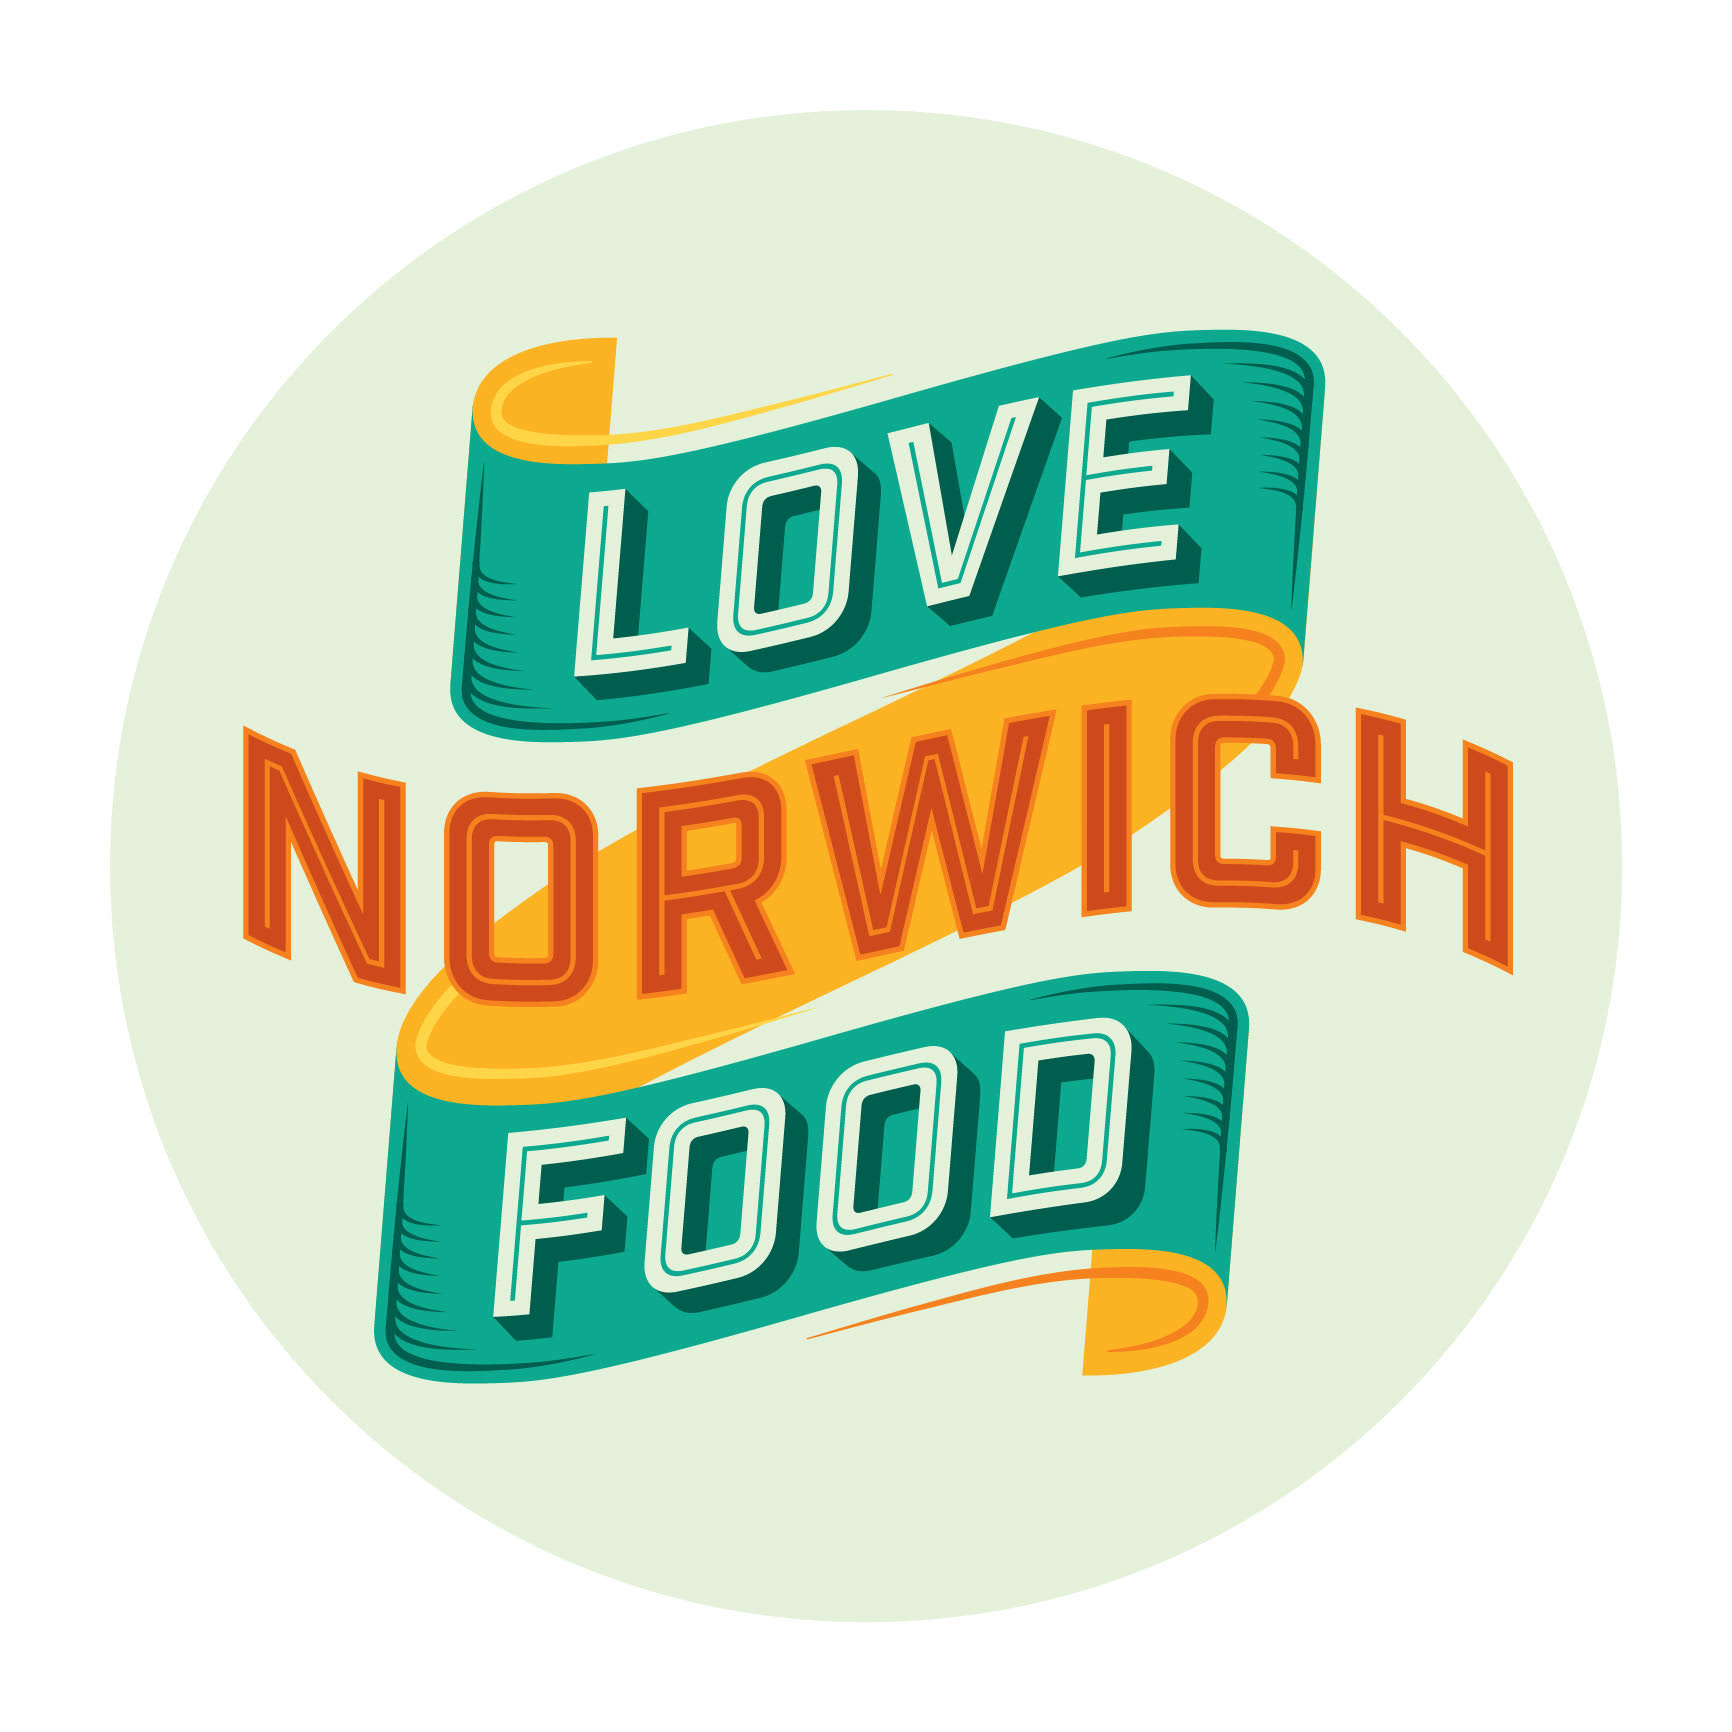 Love Norwich Food logo